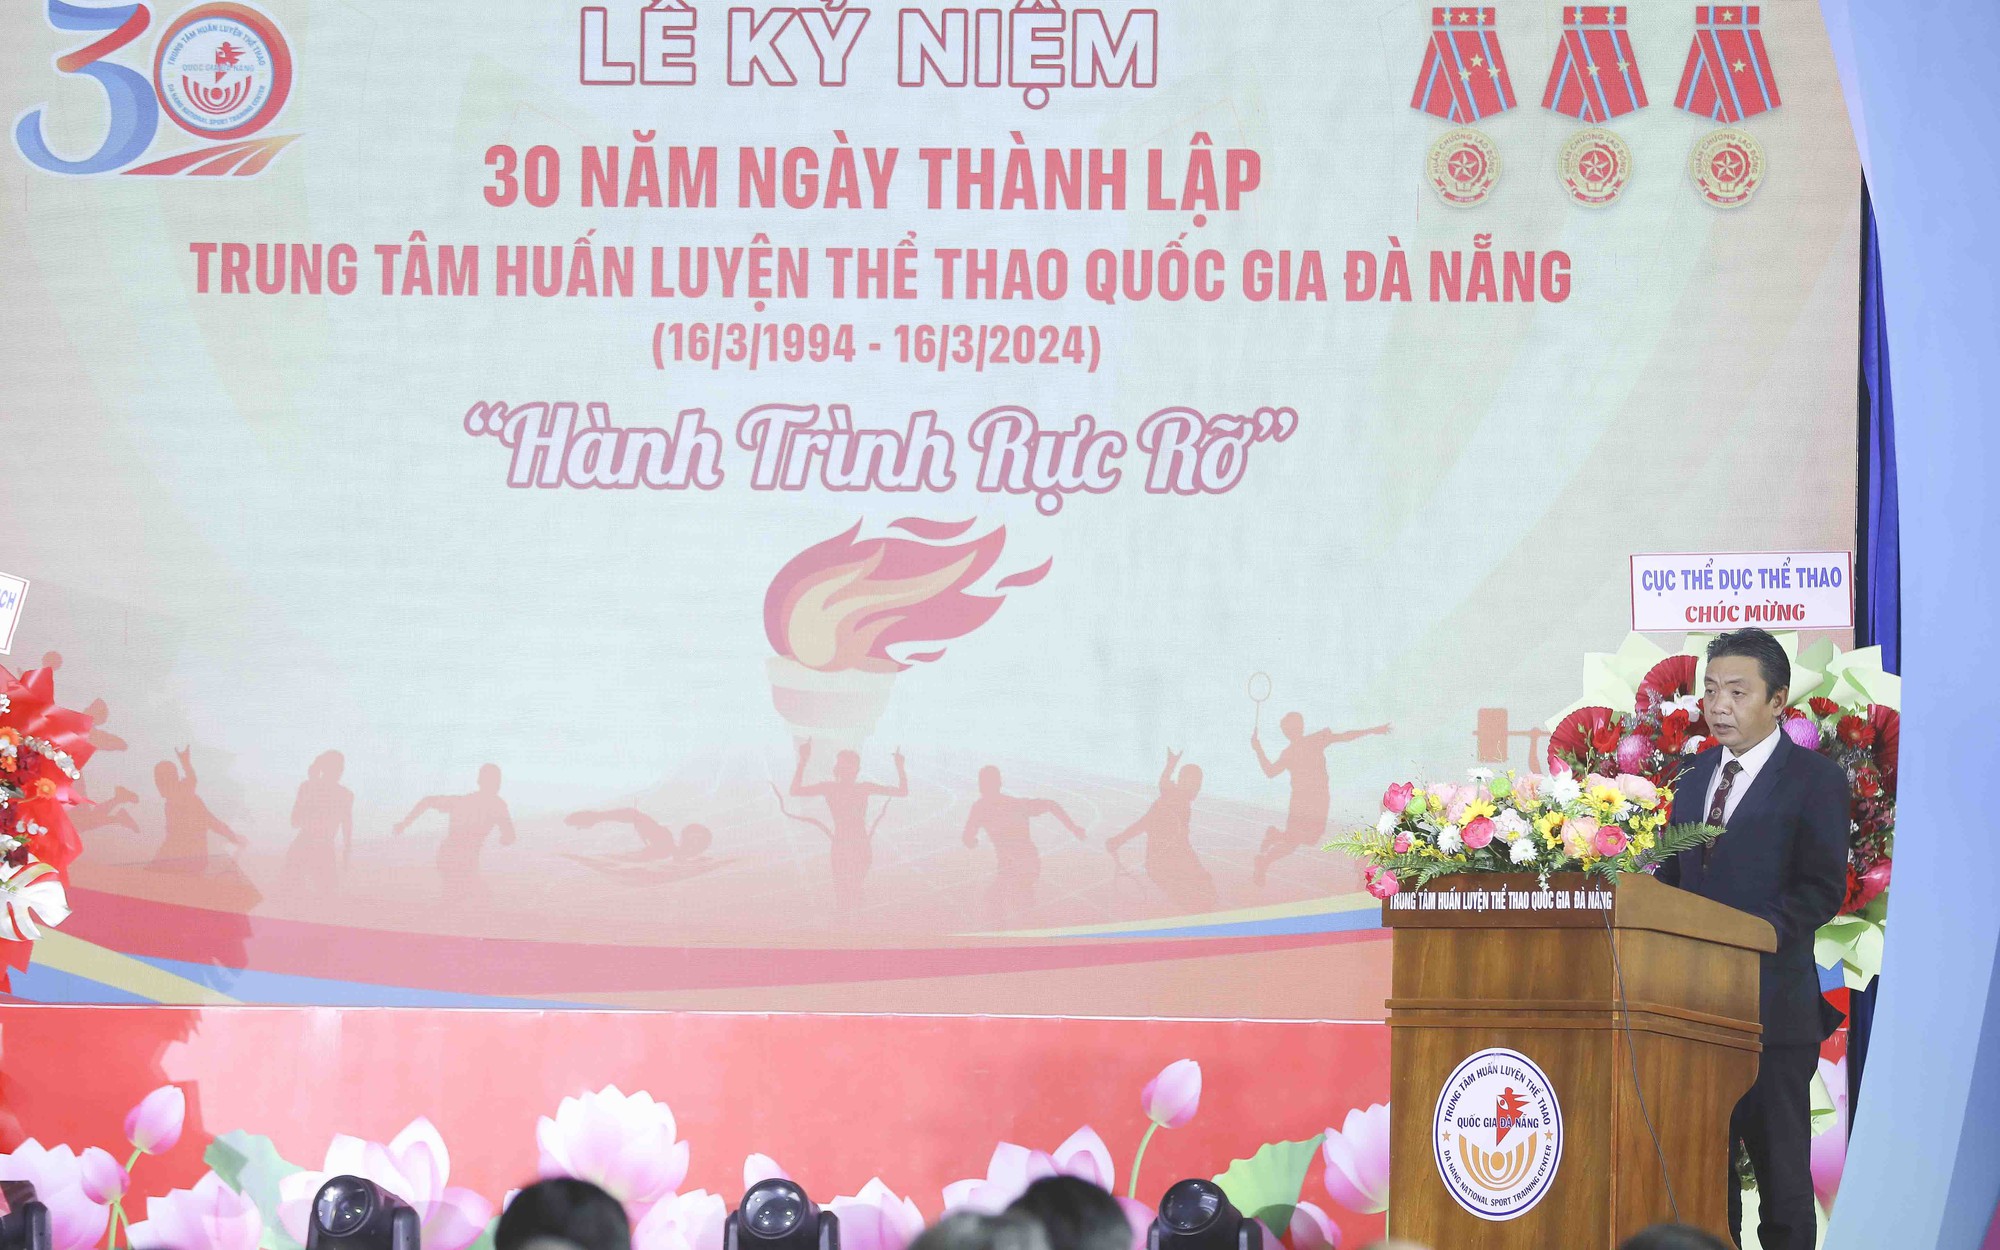 Thứ trưởng Hoàng Đạo Cương dự lễ kỷ niệm 30 năm thành lập Trung tâm huấn luyện thể thao quốc gia Đà Nẵng